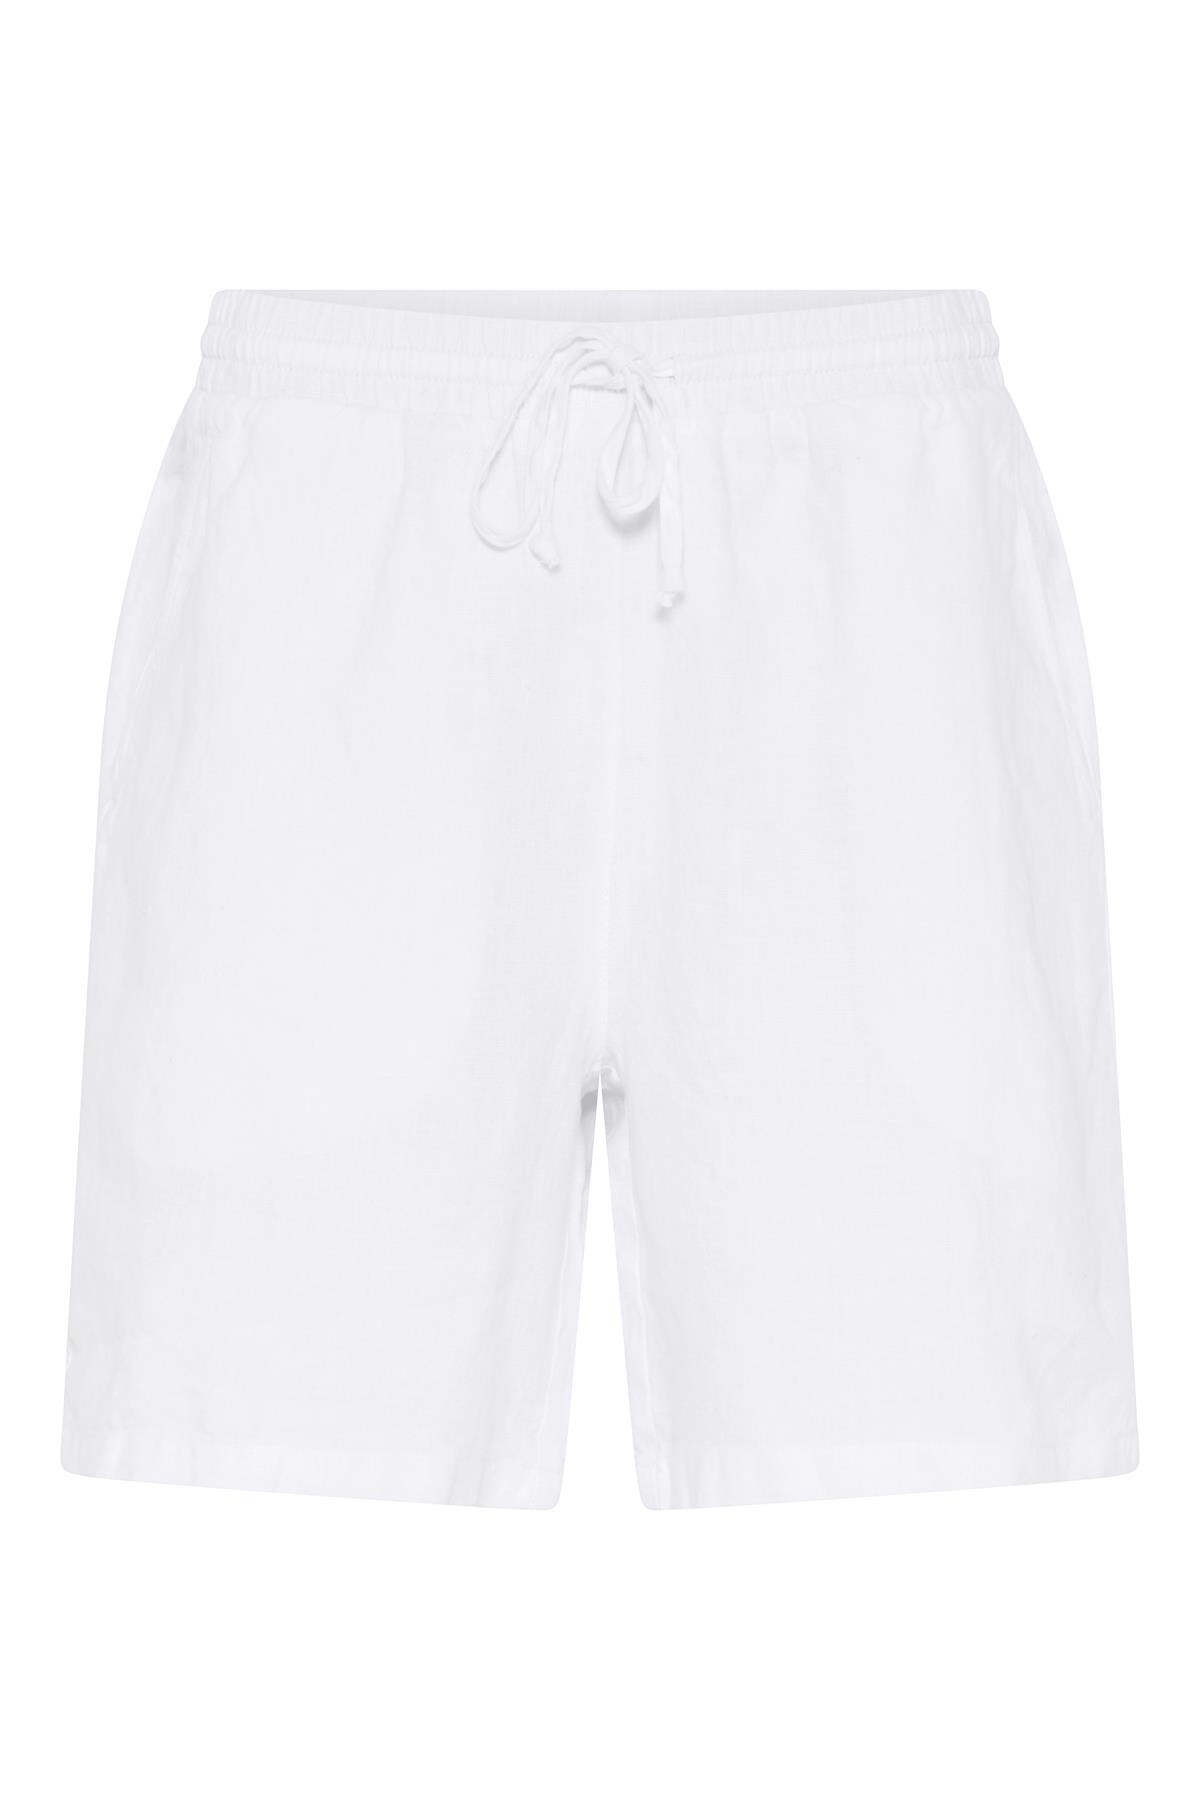 7: In Front Lino Shorts, Farve: Hvid, Størrelse: M, Dame